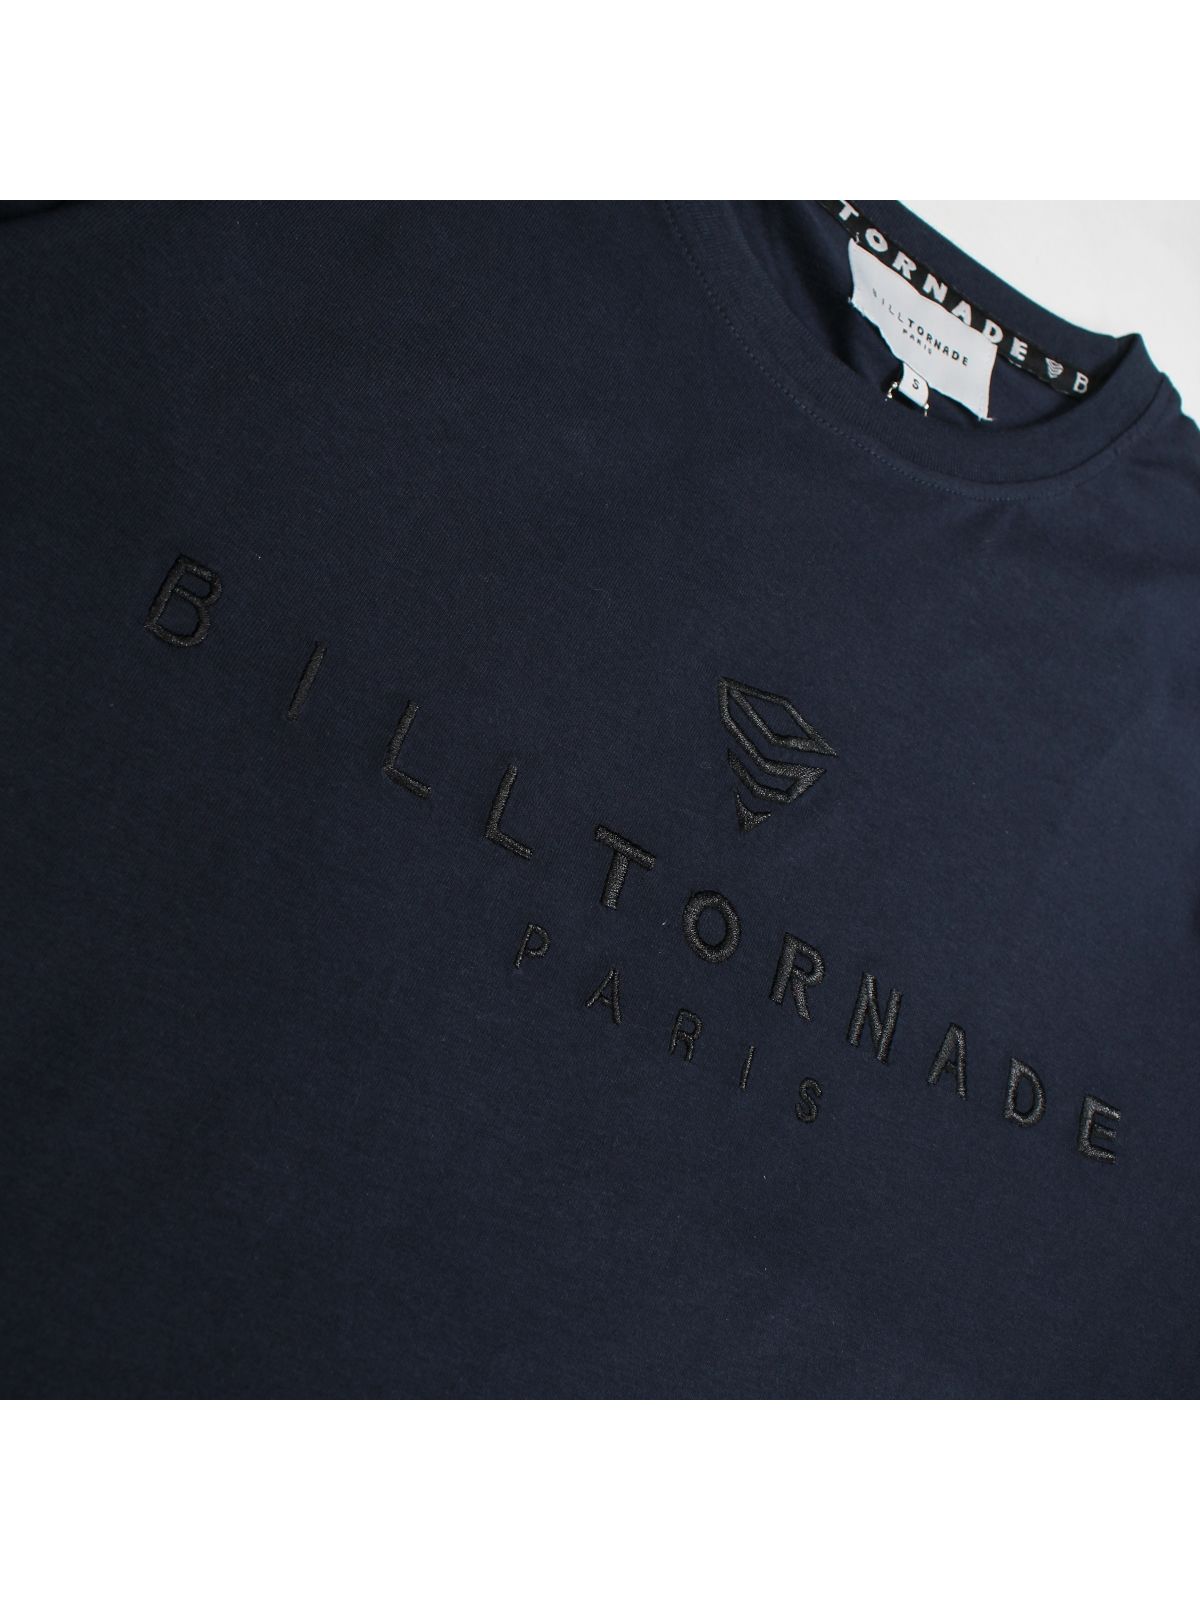 Bill Tornade Lange mouwen t-shirt